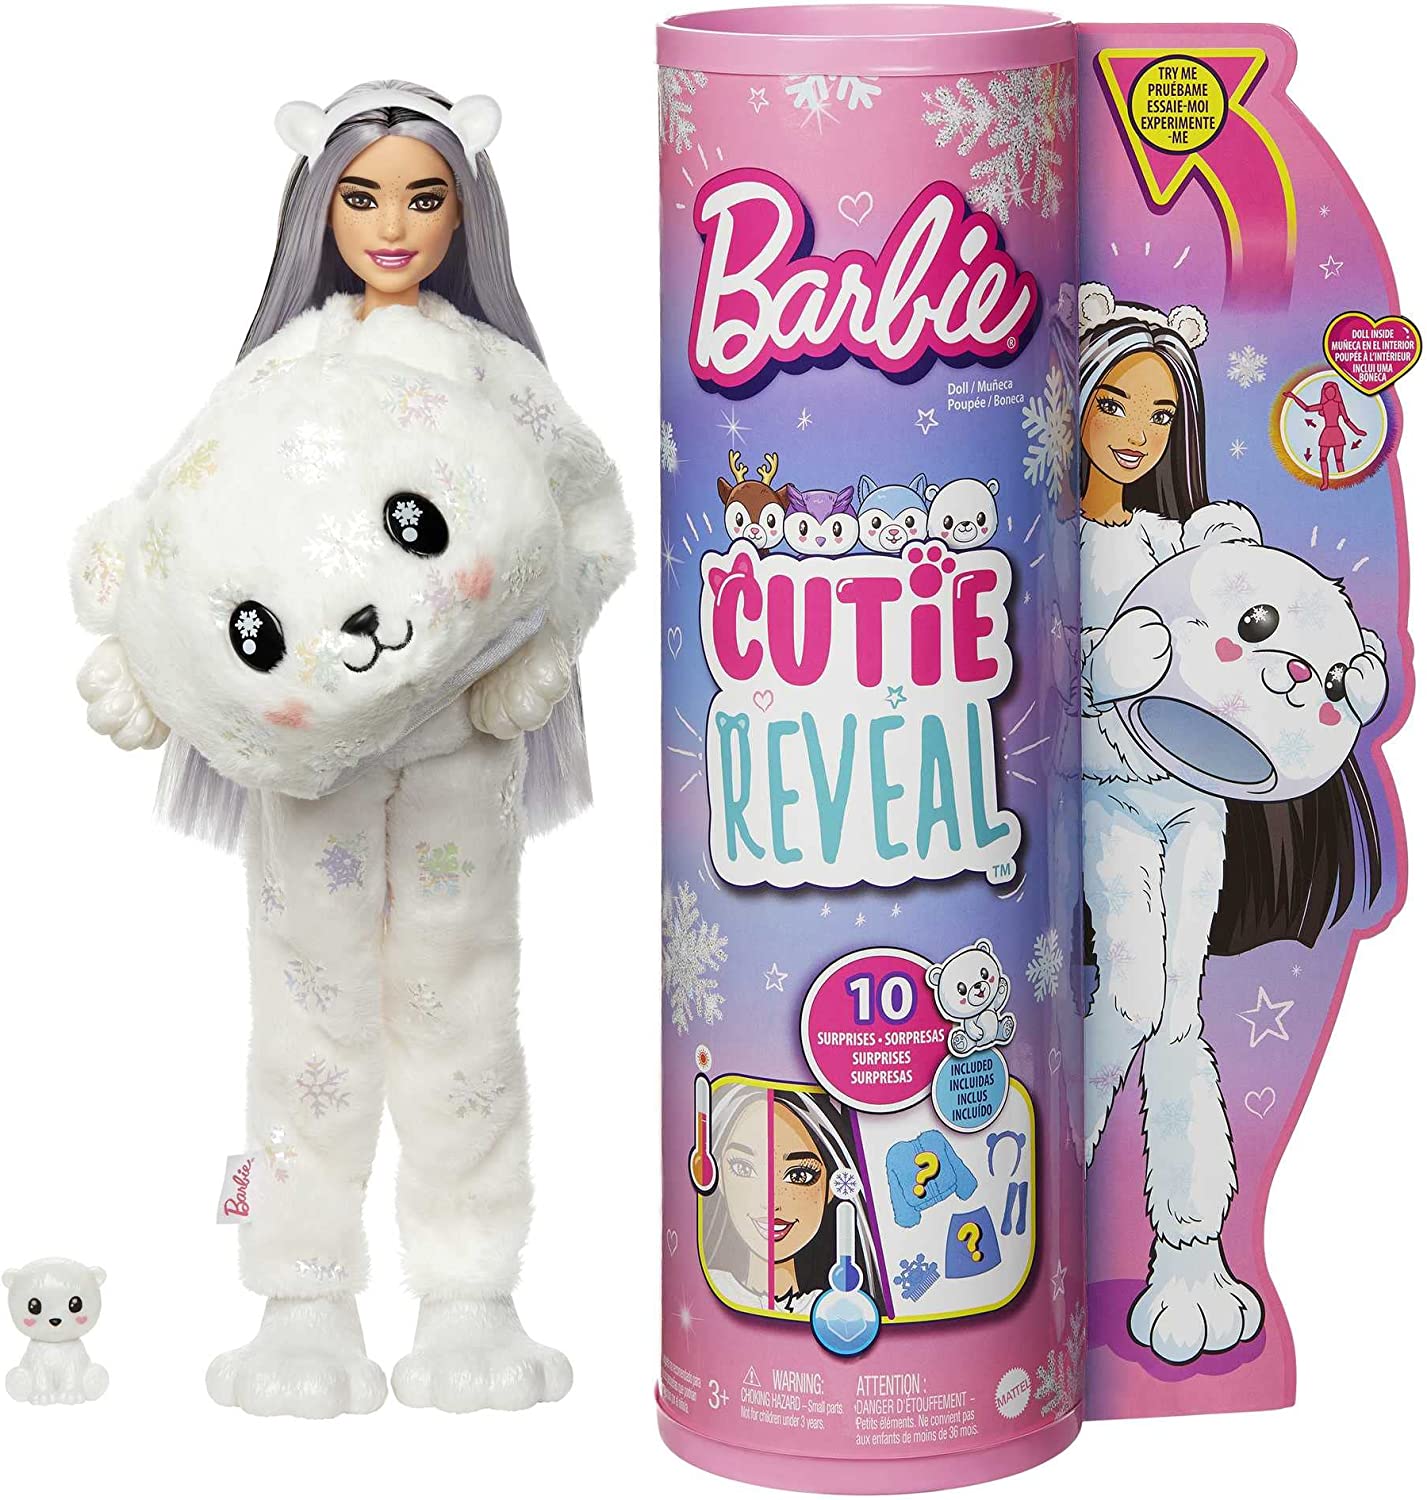 Barbie Cutie Reveal Doll Polar Bear lelle HJL64